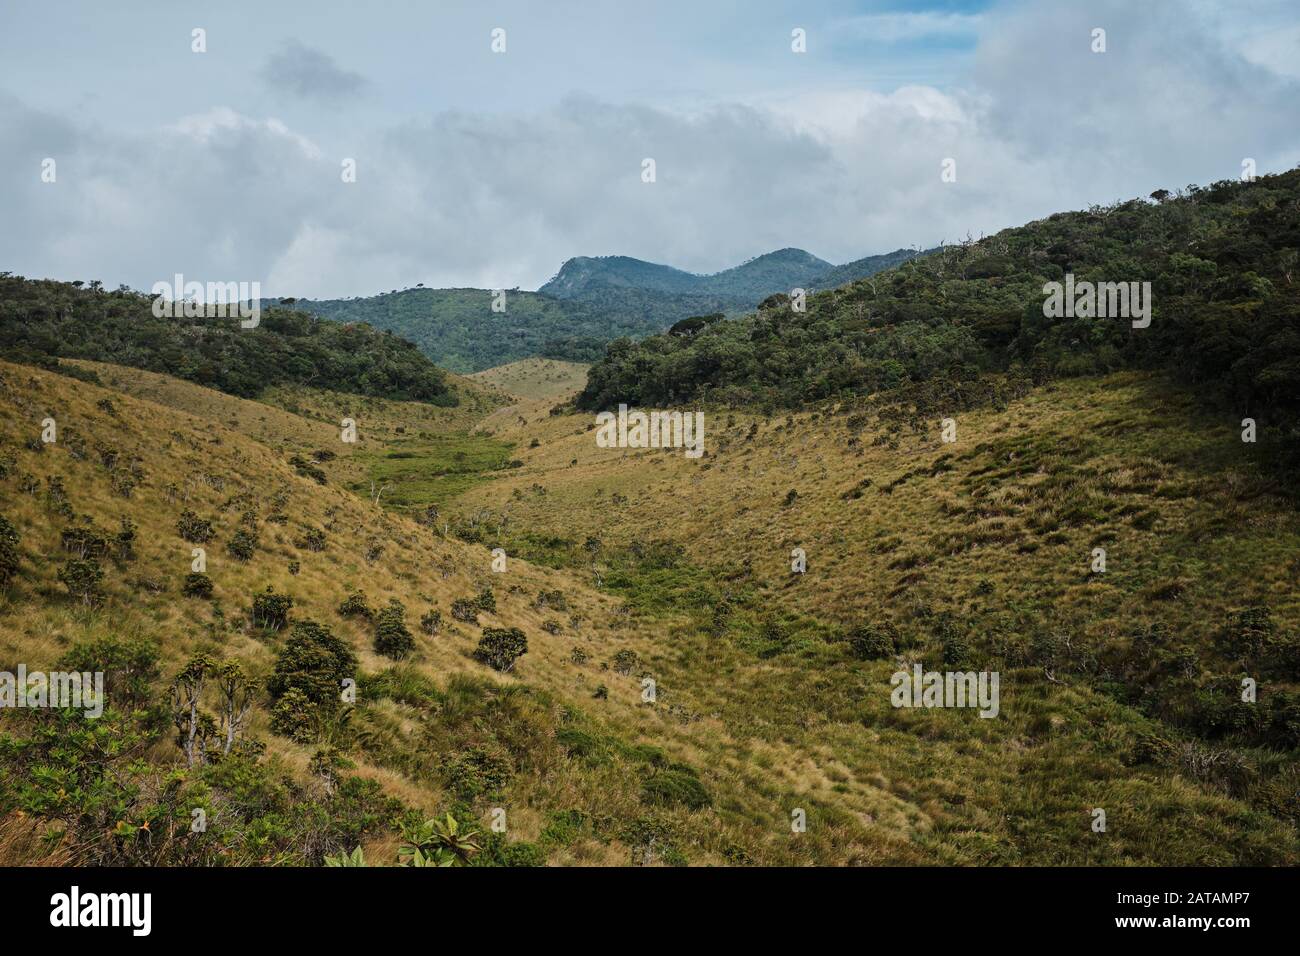 Lush vegetation in Hortons Plains national park, Sri Lanka Stock Photo